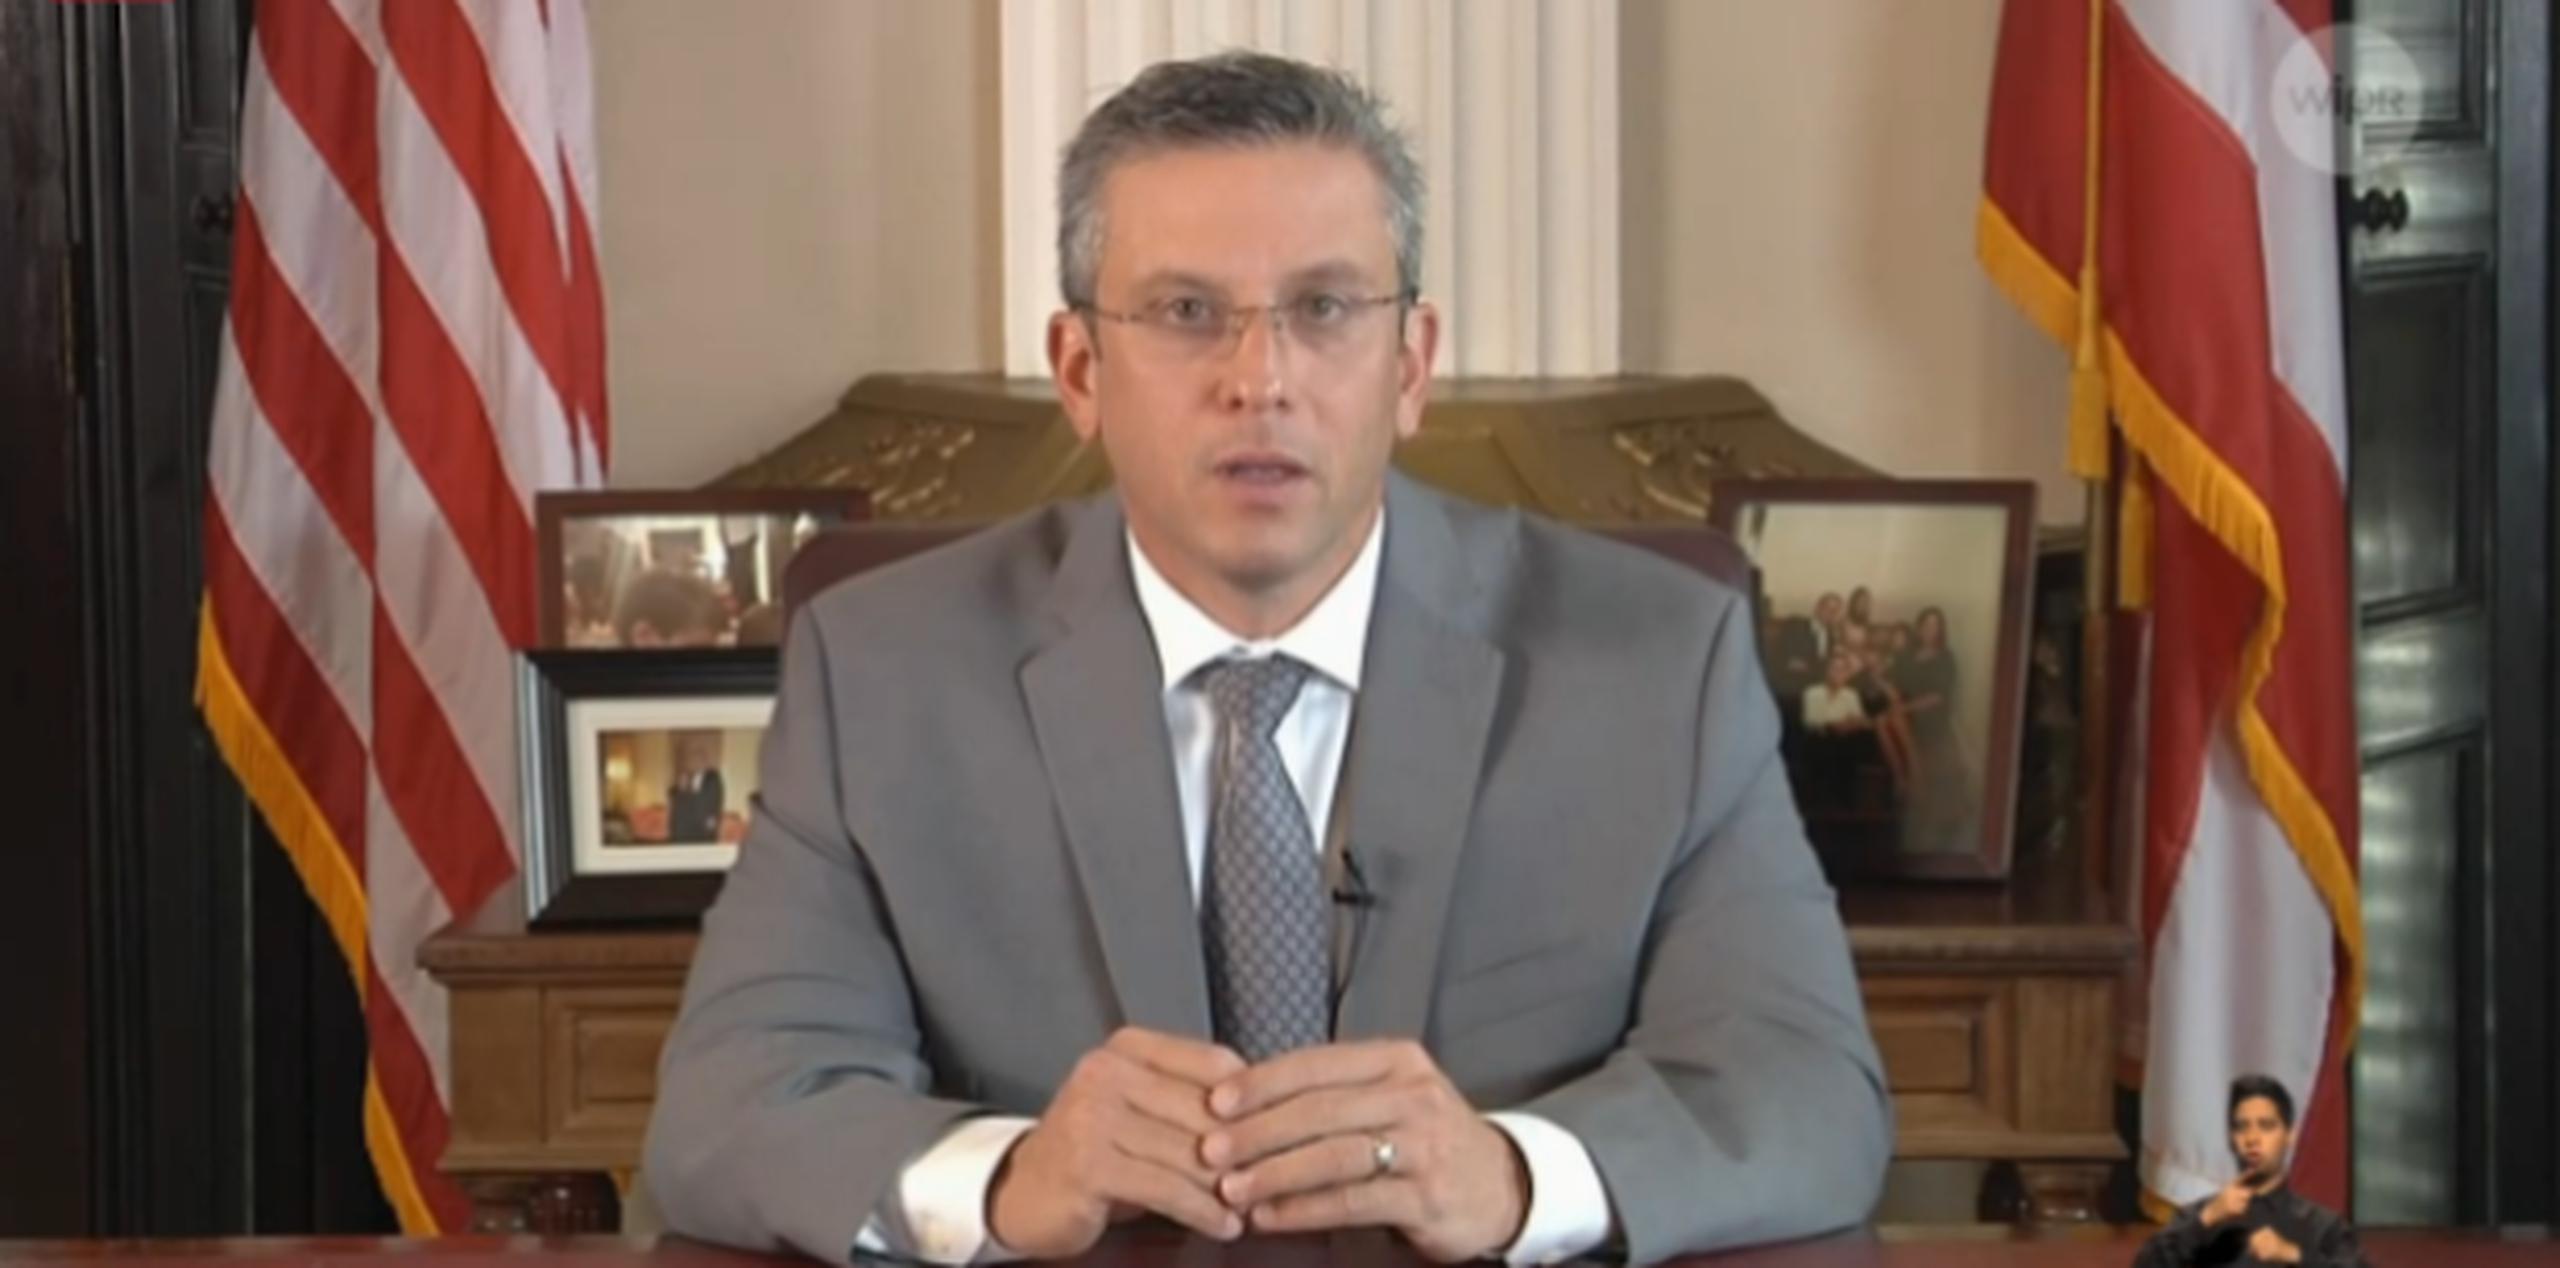 El mensaje de García Padilla se ofreció a horas de la primera reunión de los miembros de la junta. (Captura de pantalla)